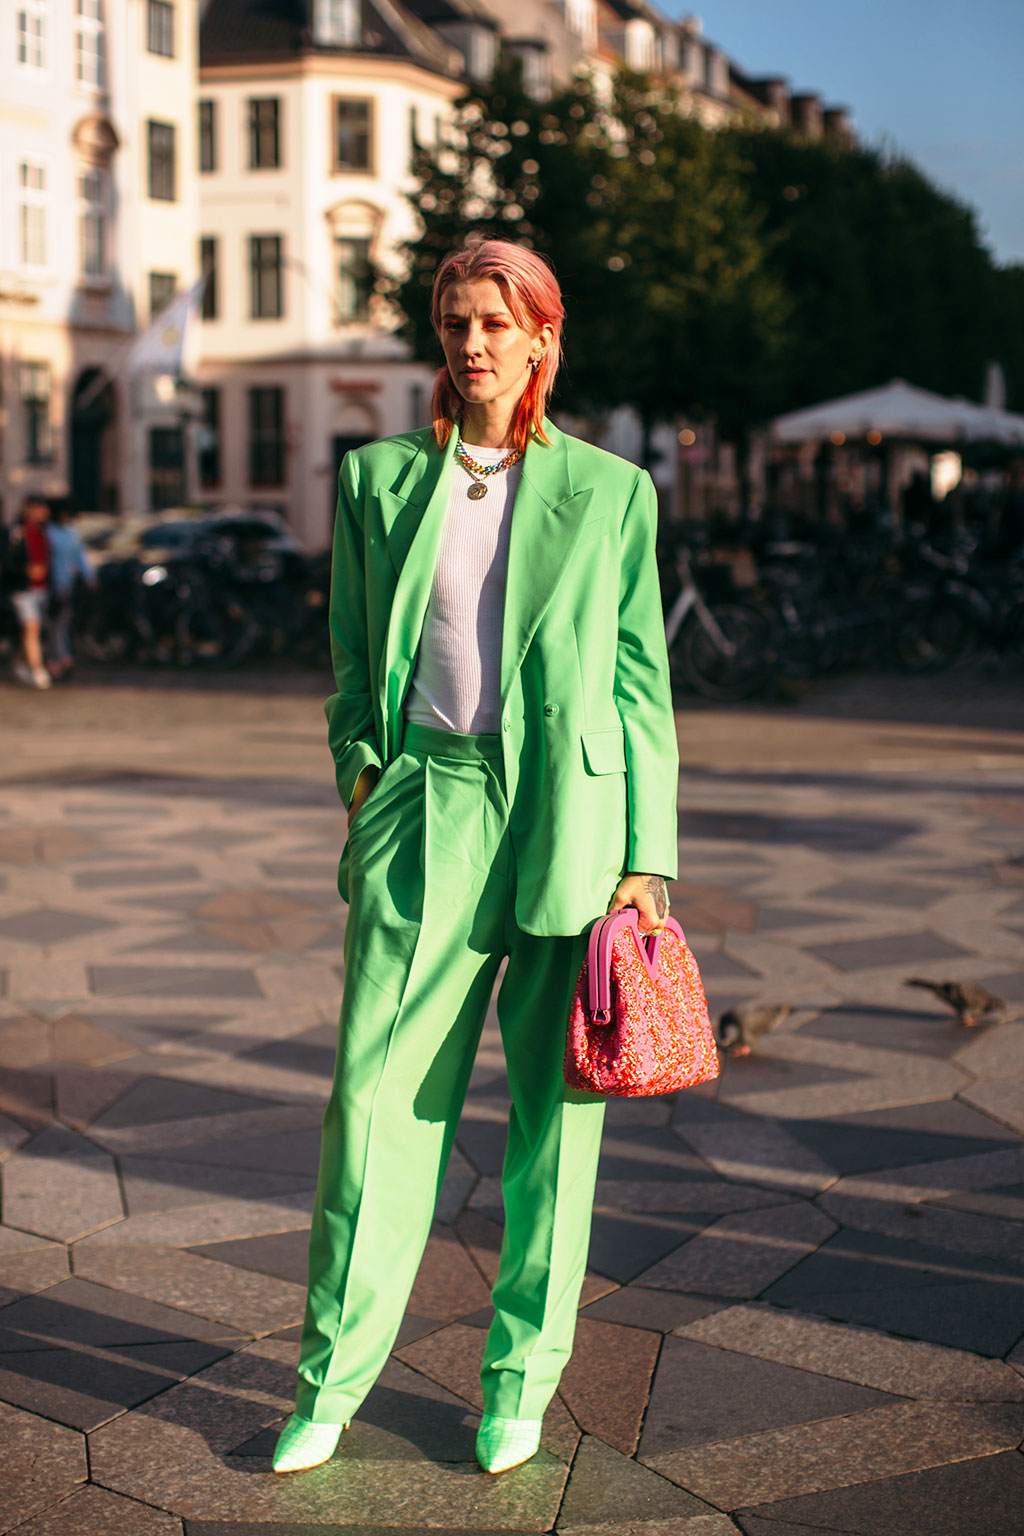 Cách mặc suit nữ đẹp như fashionista tại tuần lễ thời trang Copenhagen 5